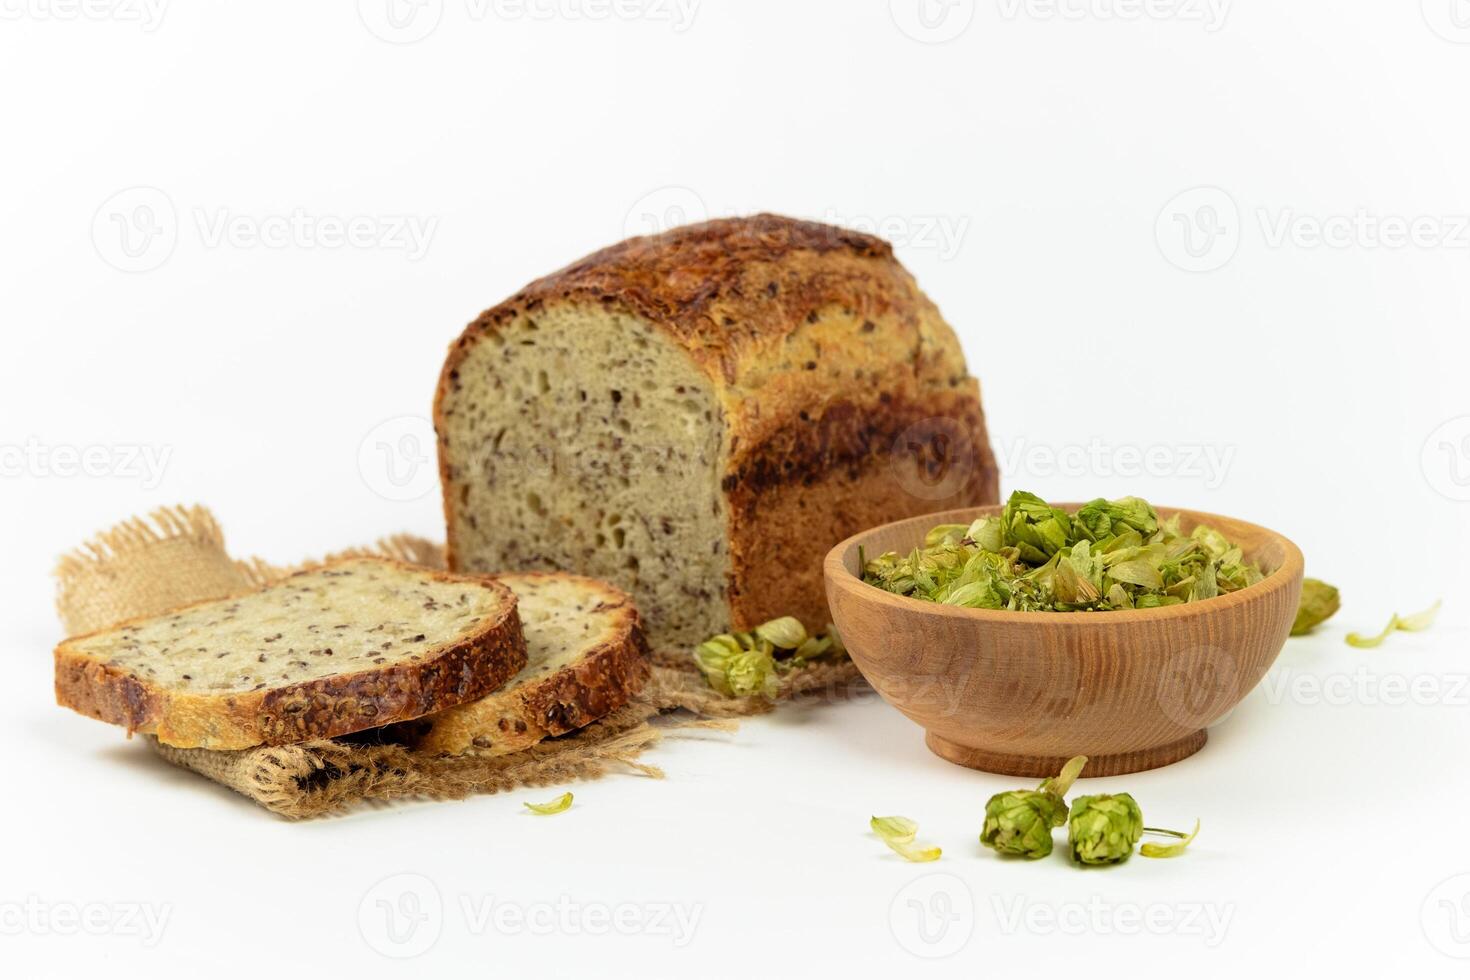 biologisch brood van geheel graan meel en hop zuurdesem. droog hop bloemen in houten kom en eigengemaakt brood. ambacht bakkerij concept foto